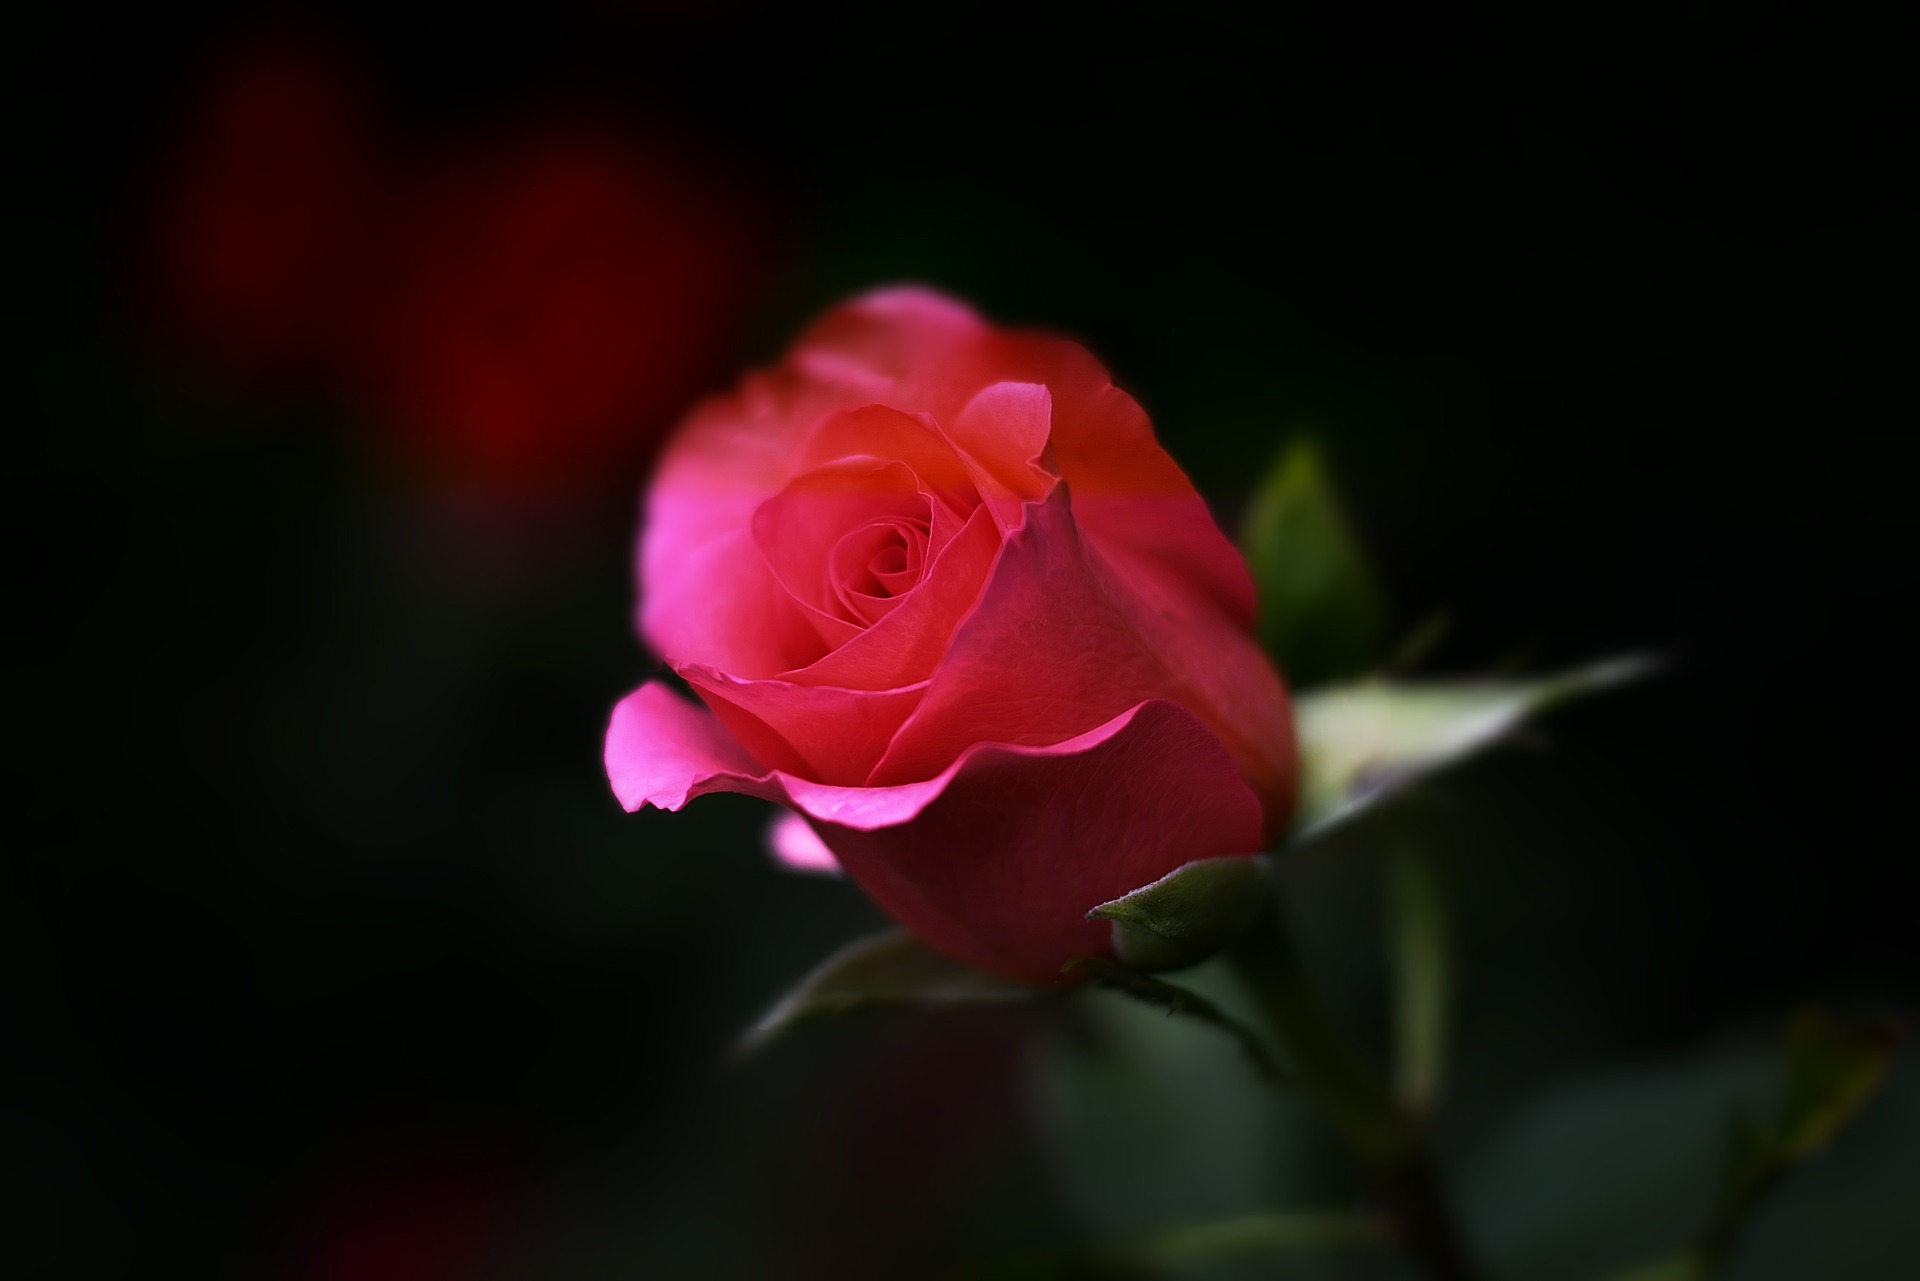 alege floarea preferata - sfatulparintilor.ro - pixabay-com - rose-402093_1920